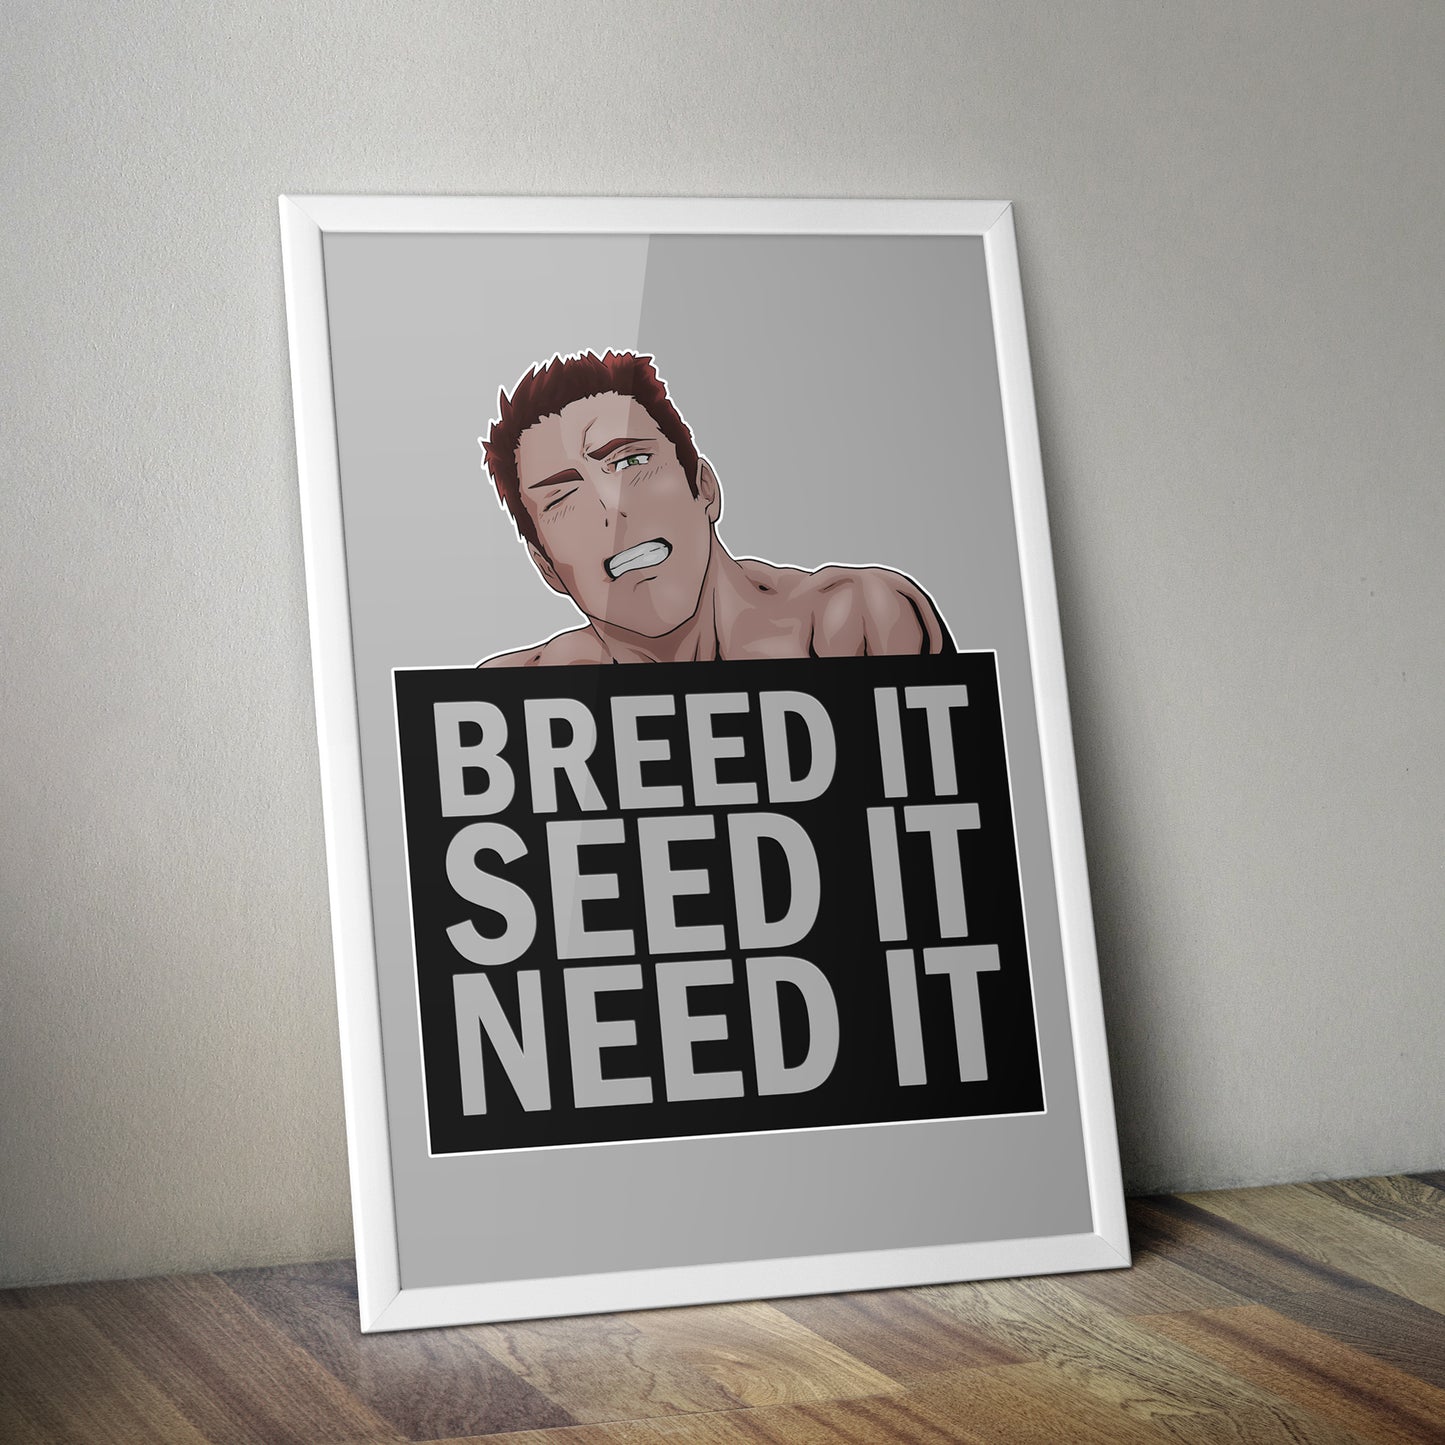 Breed It, Seed It, Need It